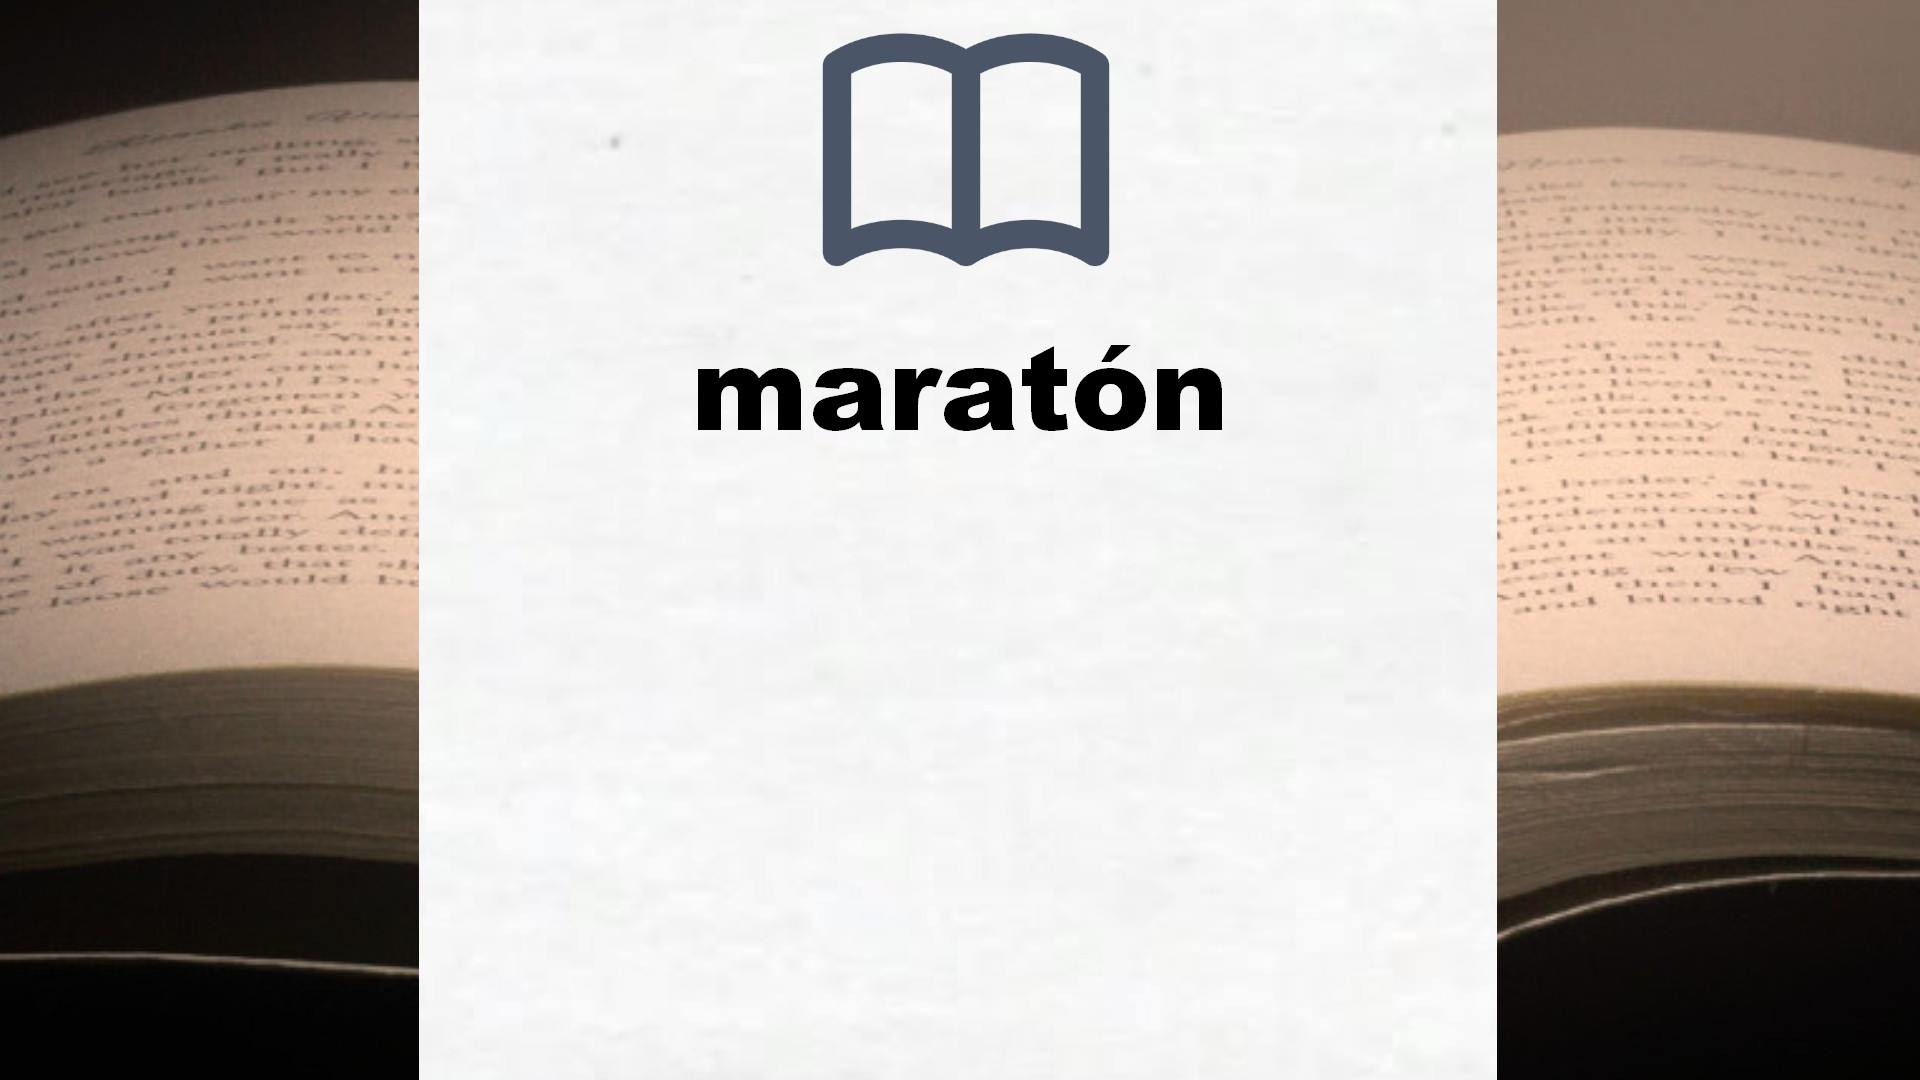 Libros sobre maratón